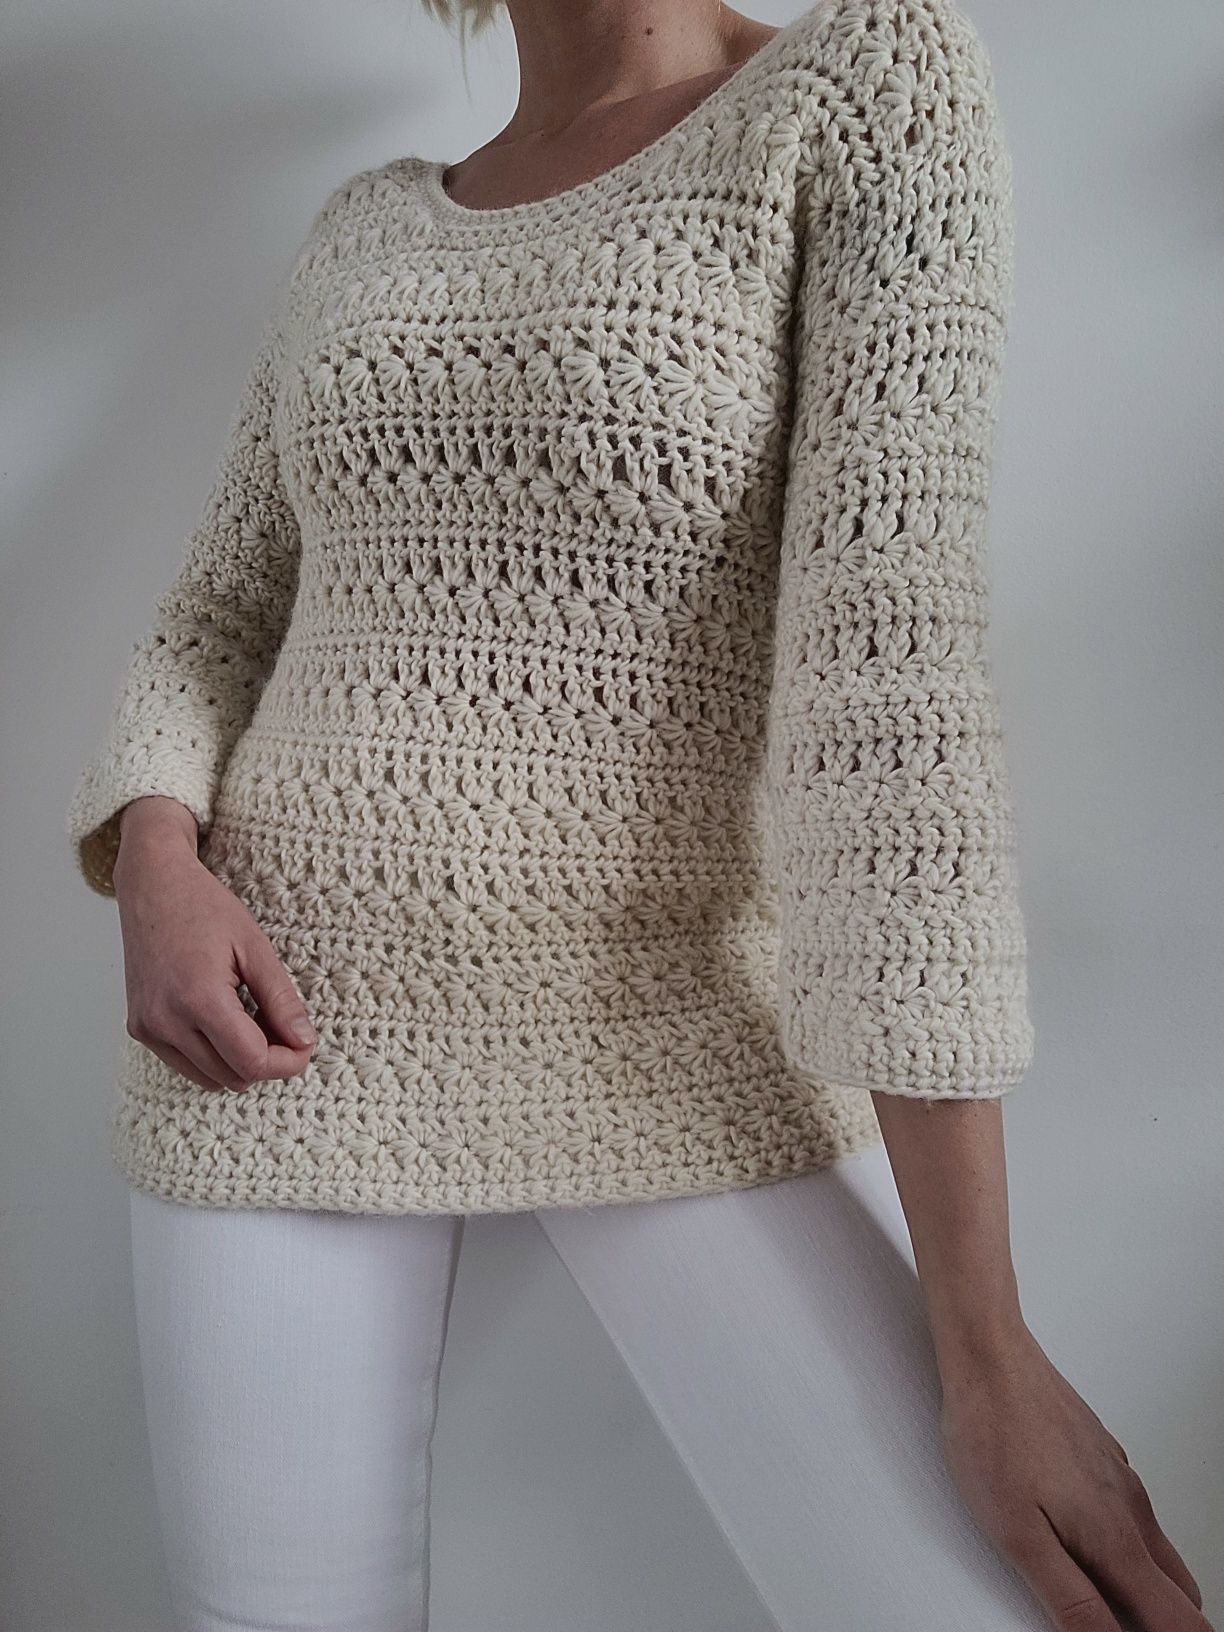 Gruby kremowy wełniany sweter boho 100% wełna handmade